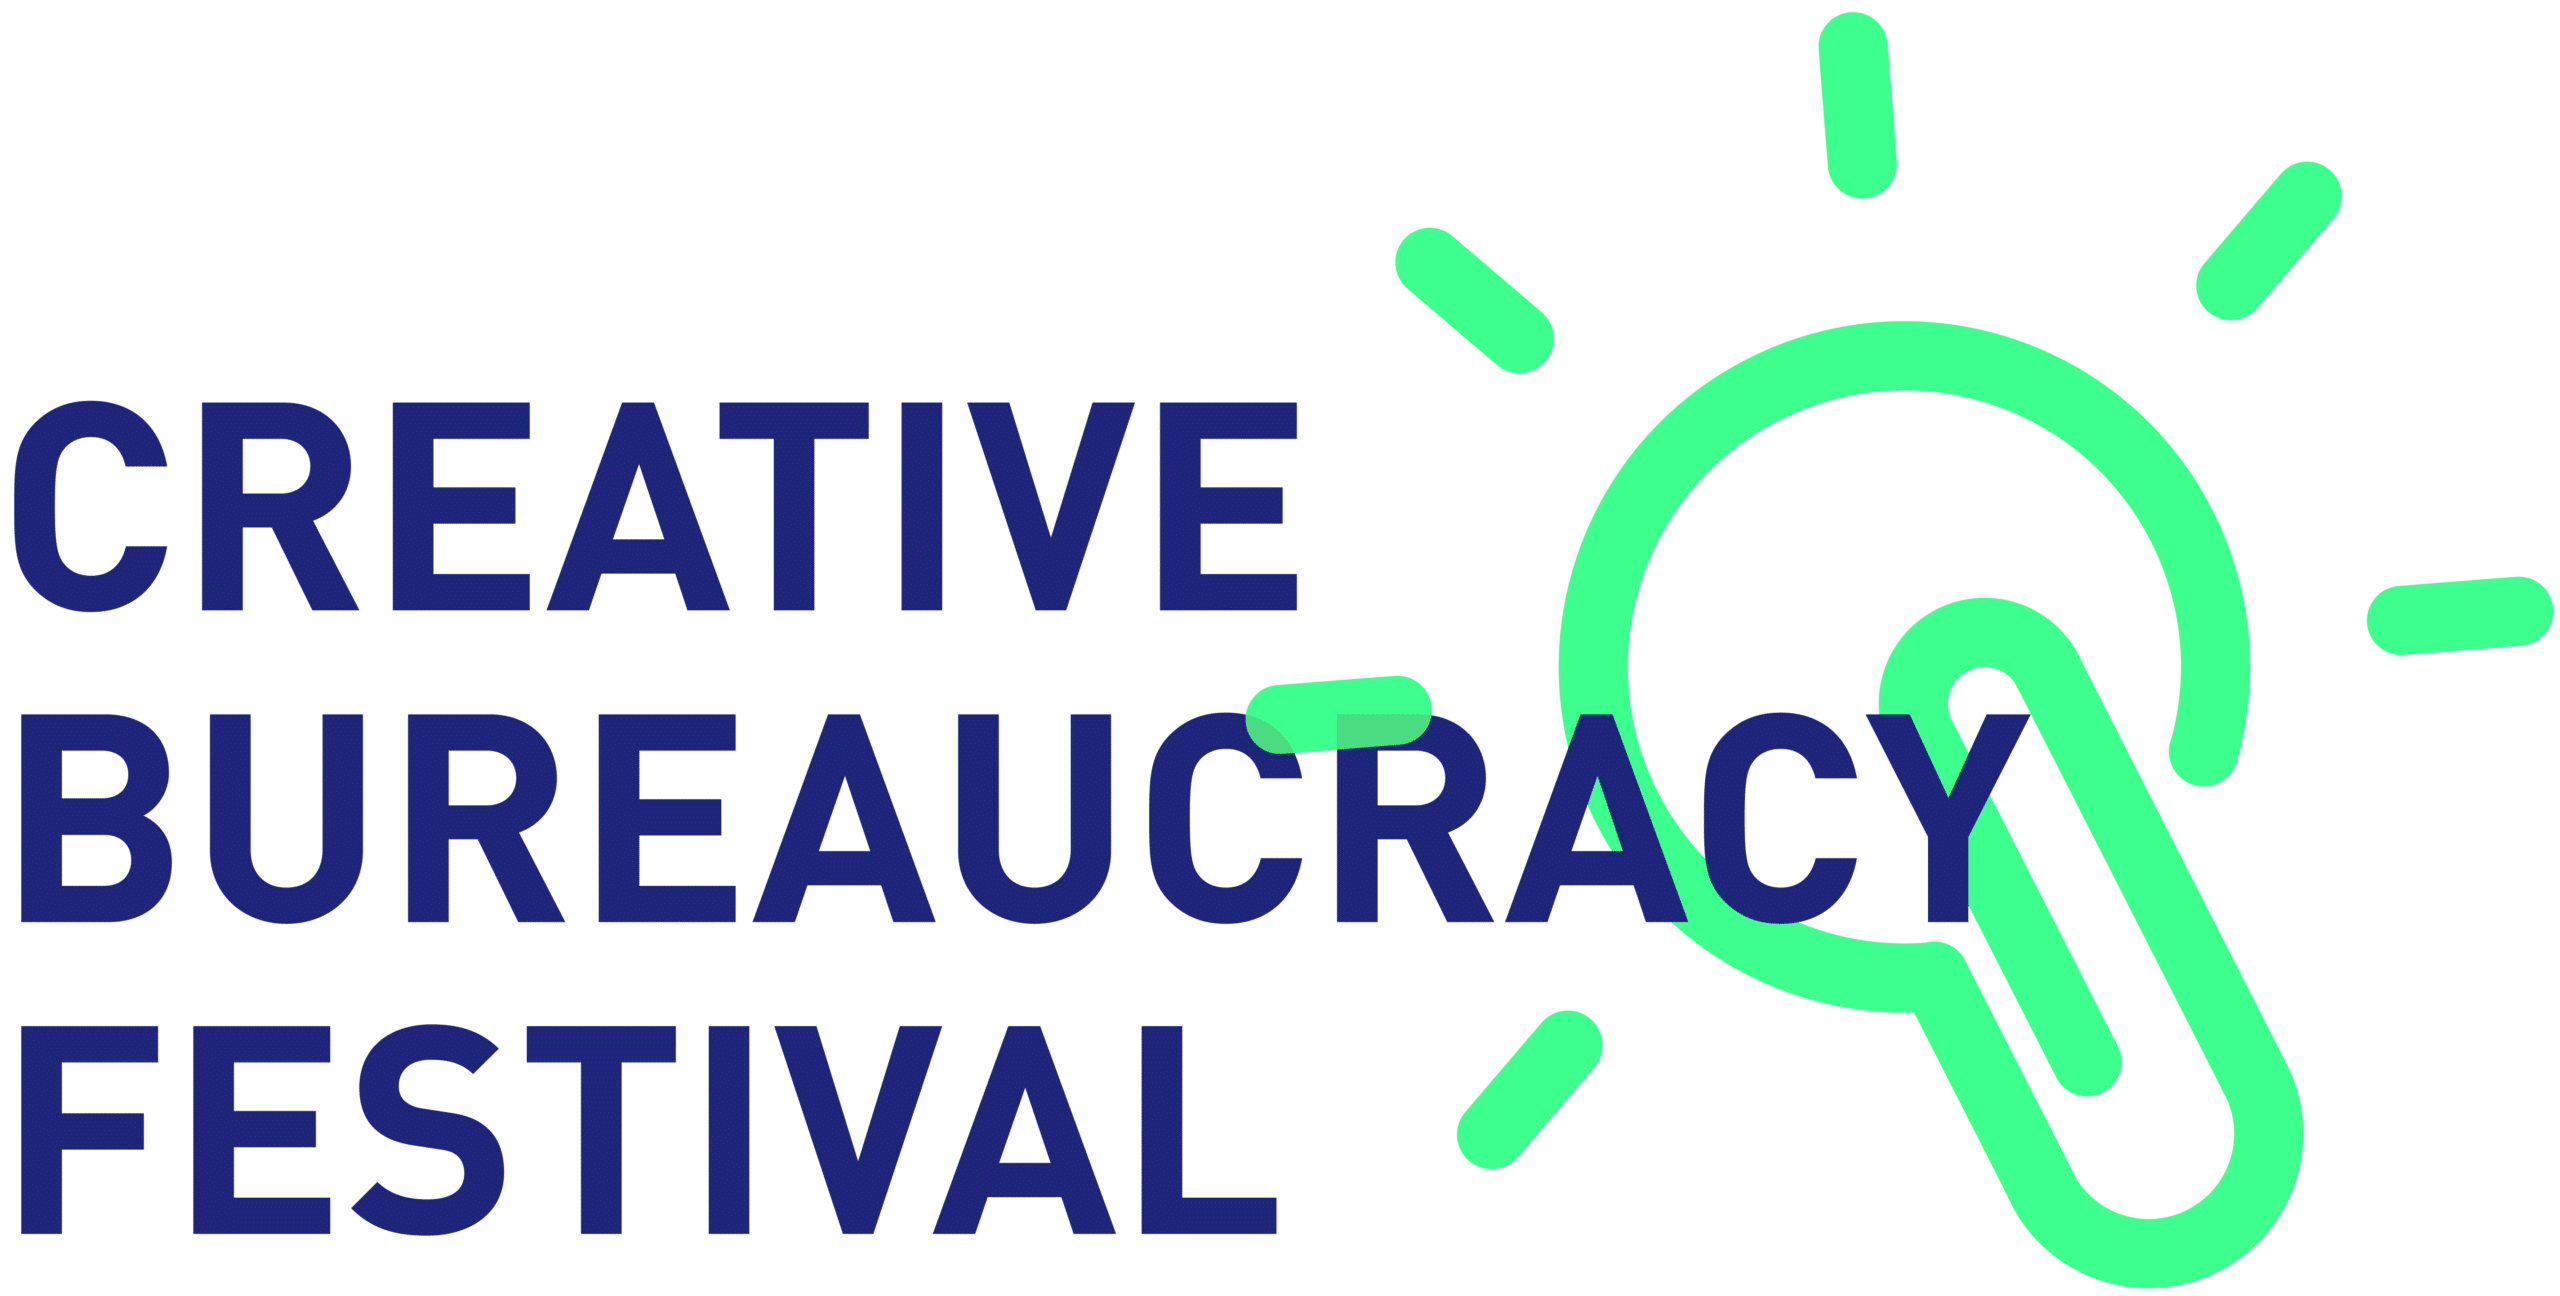 The Creative Bureaucracy Festival